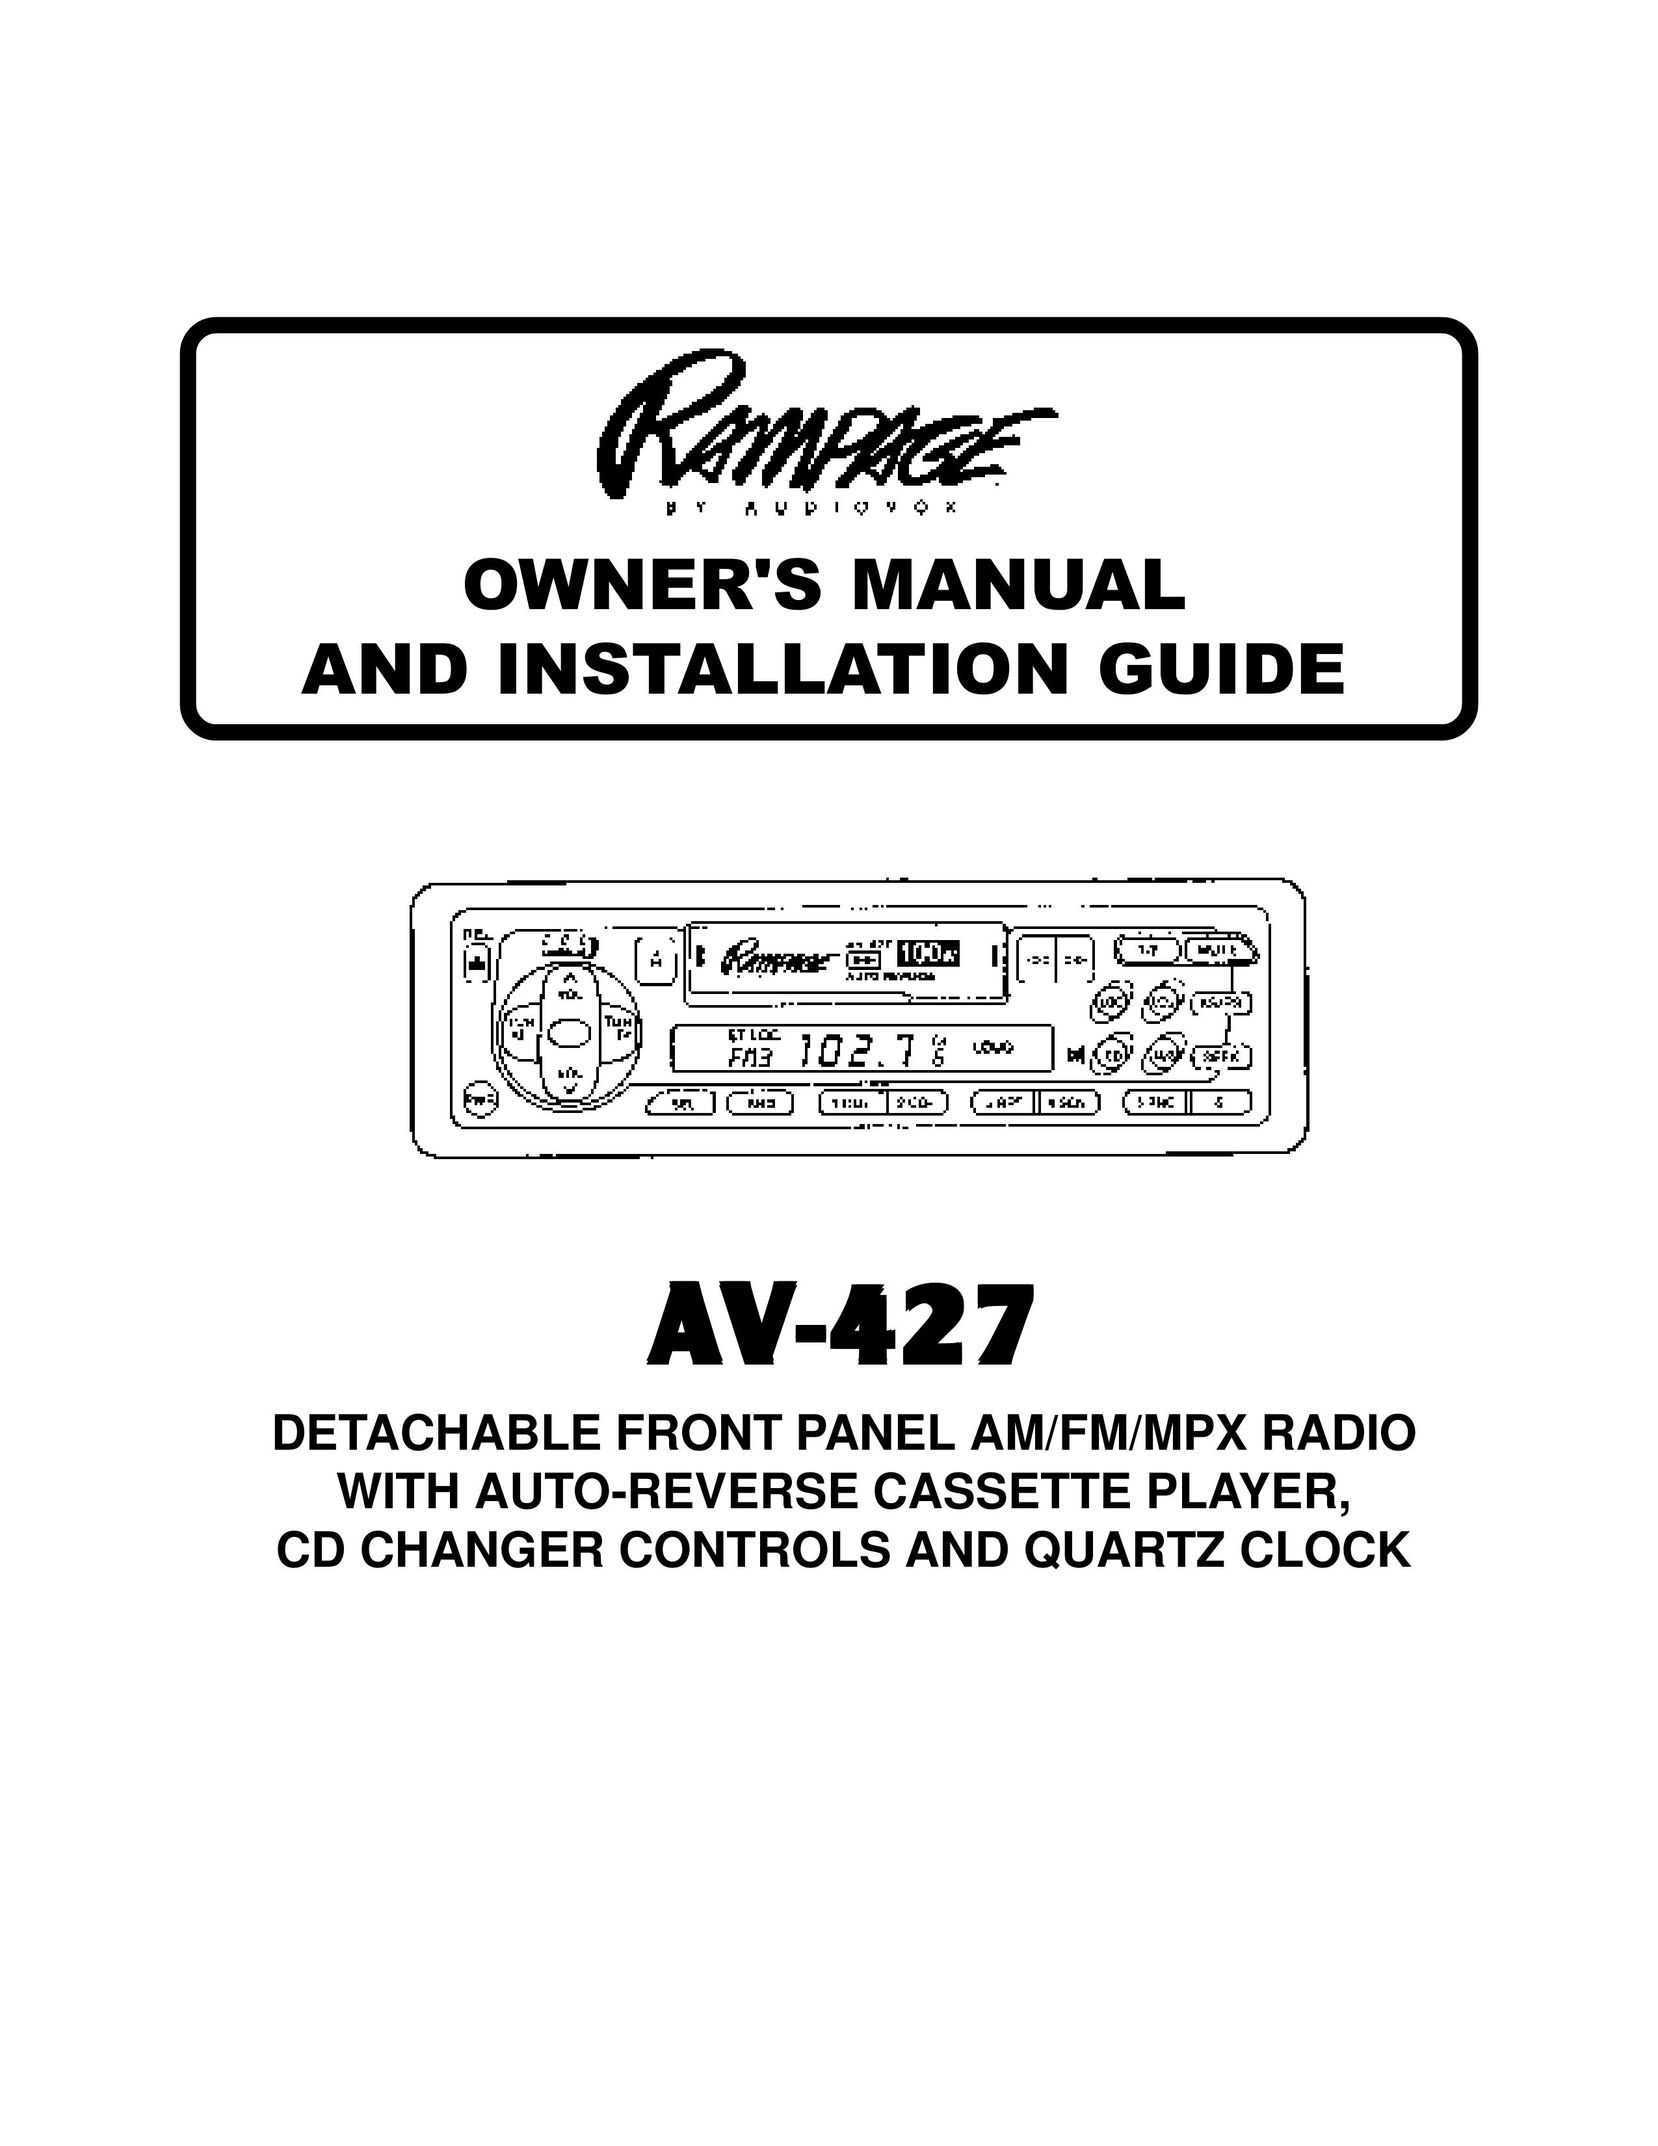 Audiovox AAAAAV-427V-427V-427V-427V-427 Car Stereo System User Manual